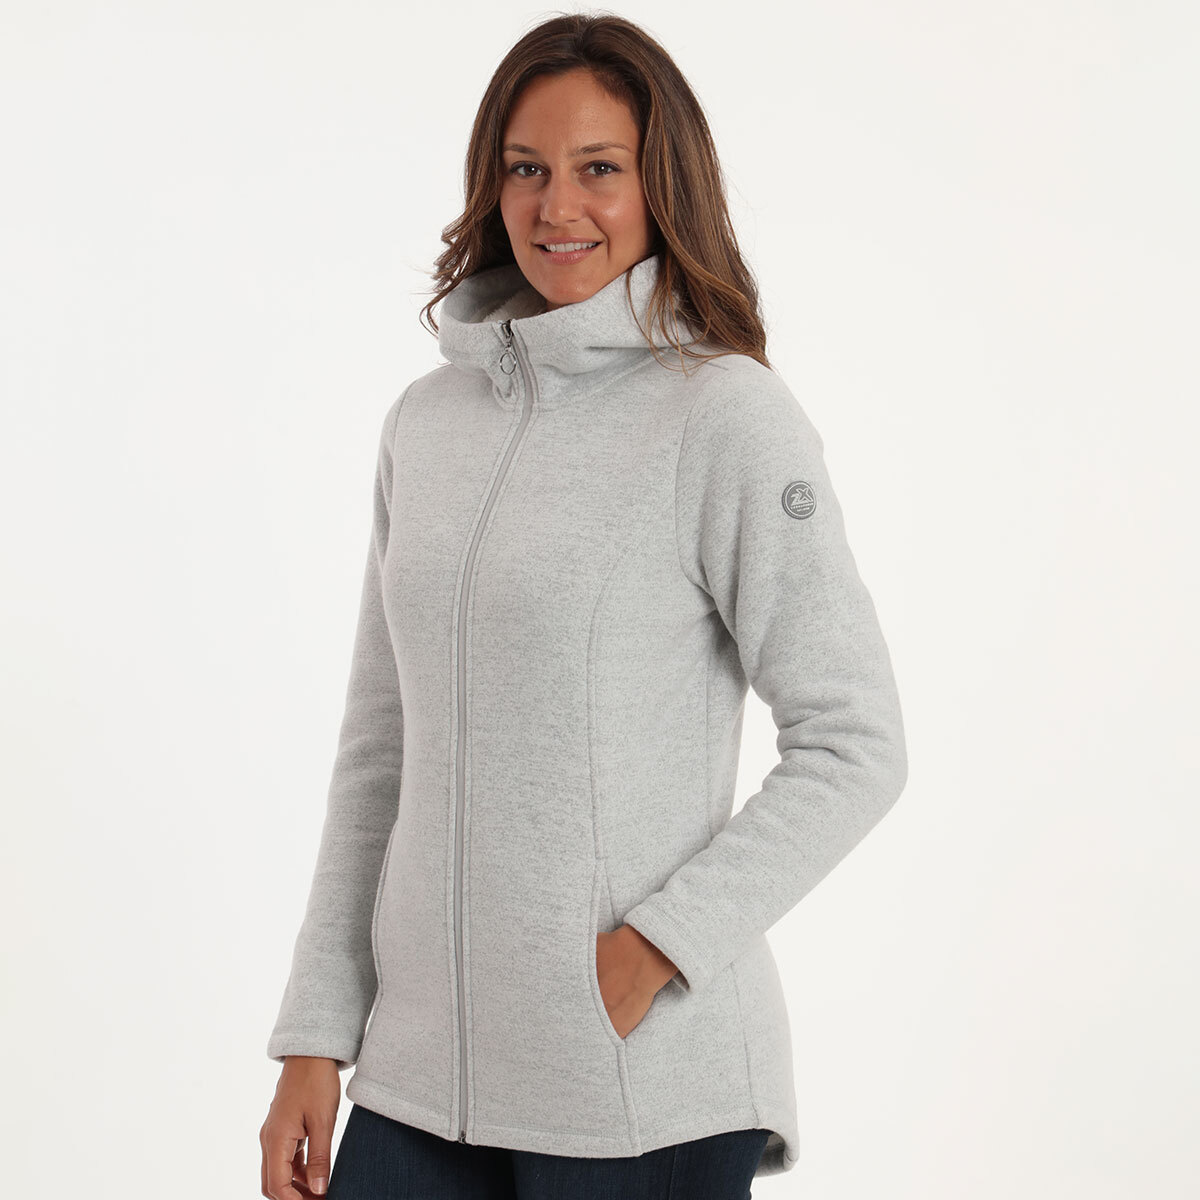 Gerry Stratus Women's Fleece in Grey, Extra Large